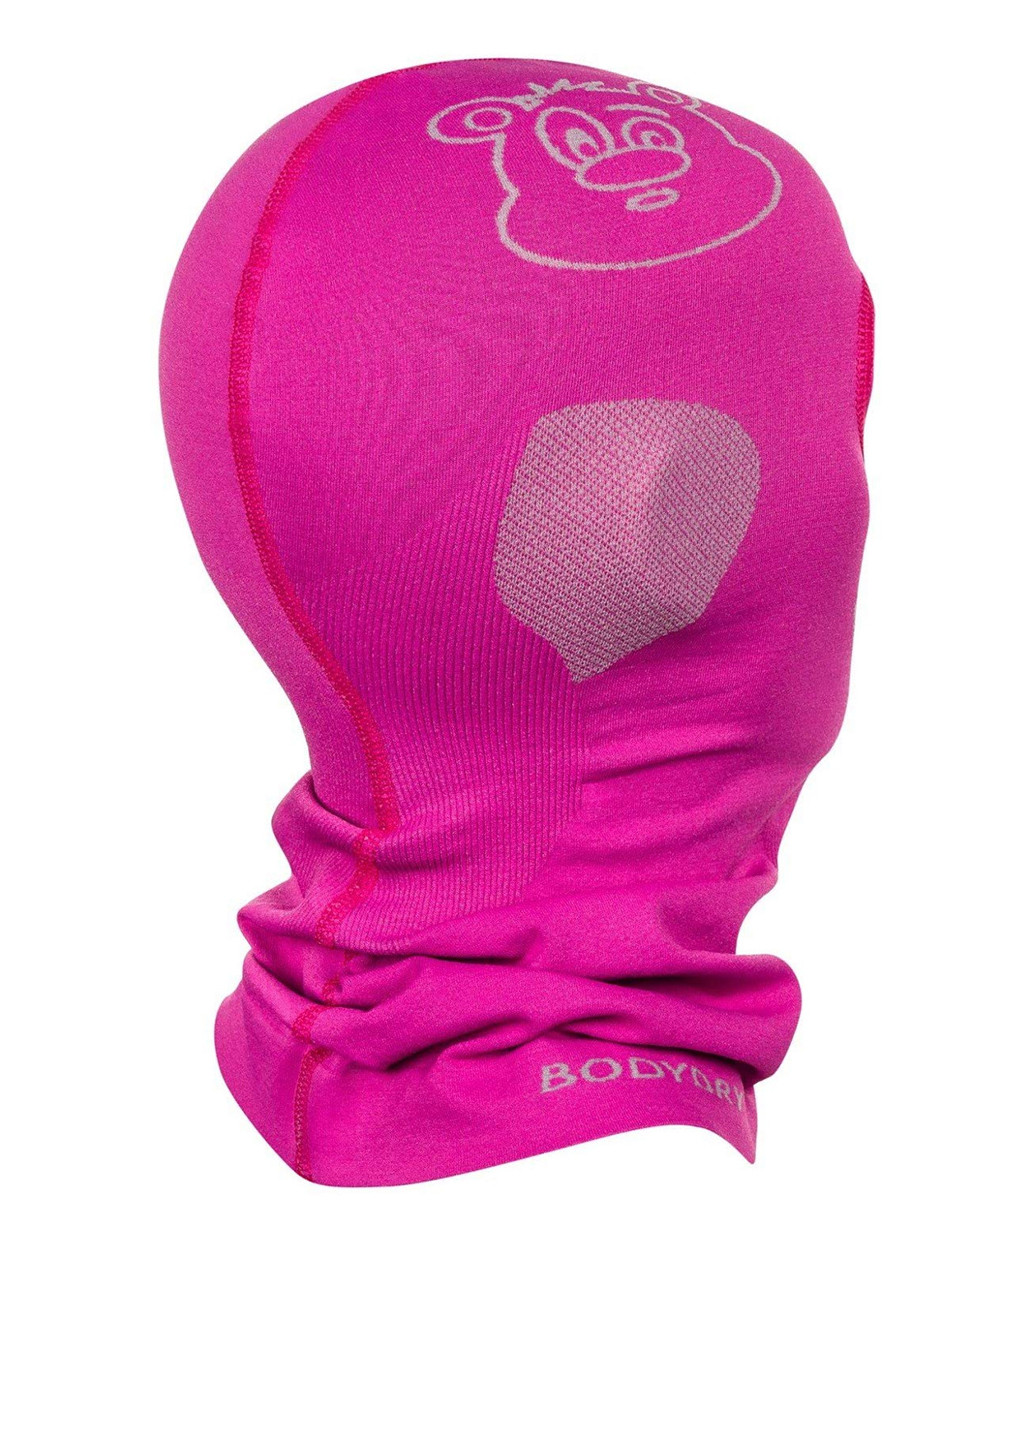 Body Dry балаклава однодирочна малюнок рожевий спортивний поліамід виробництво - Польща